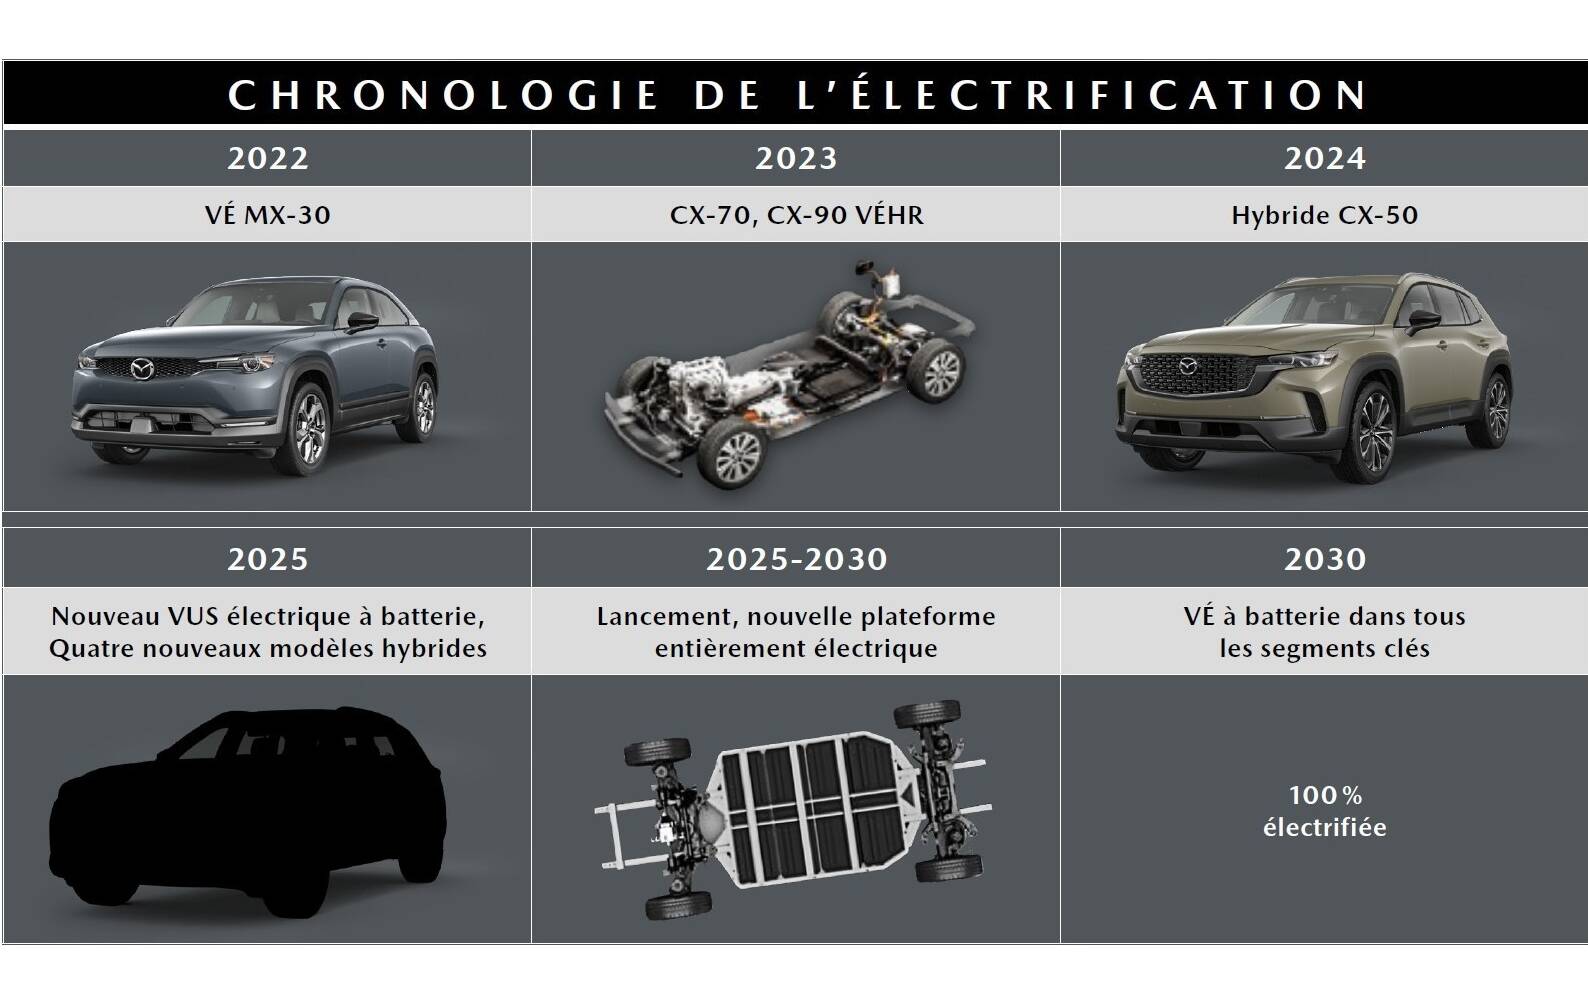 Mazda prévoit neuf modèles électrifiés au Canada d’ici 2025 551535-mazda-prevoit-neuf-modeles-electrifies-au-canada-d-ici-2025